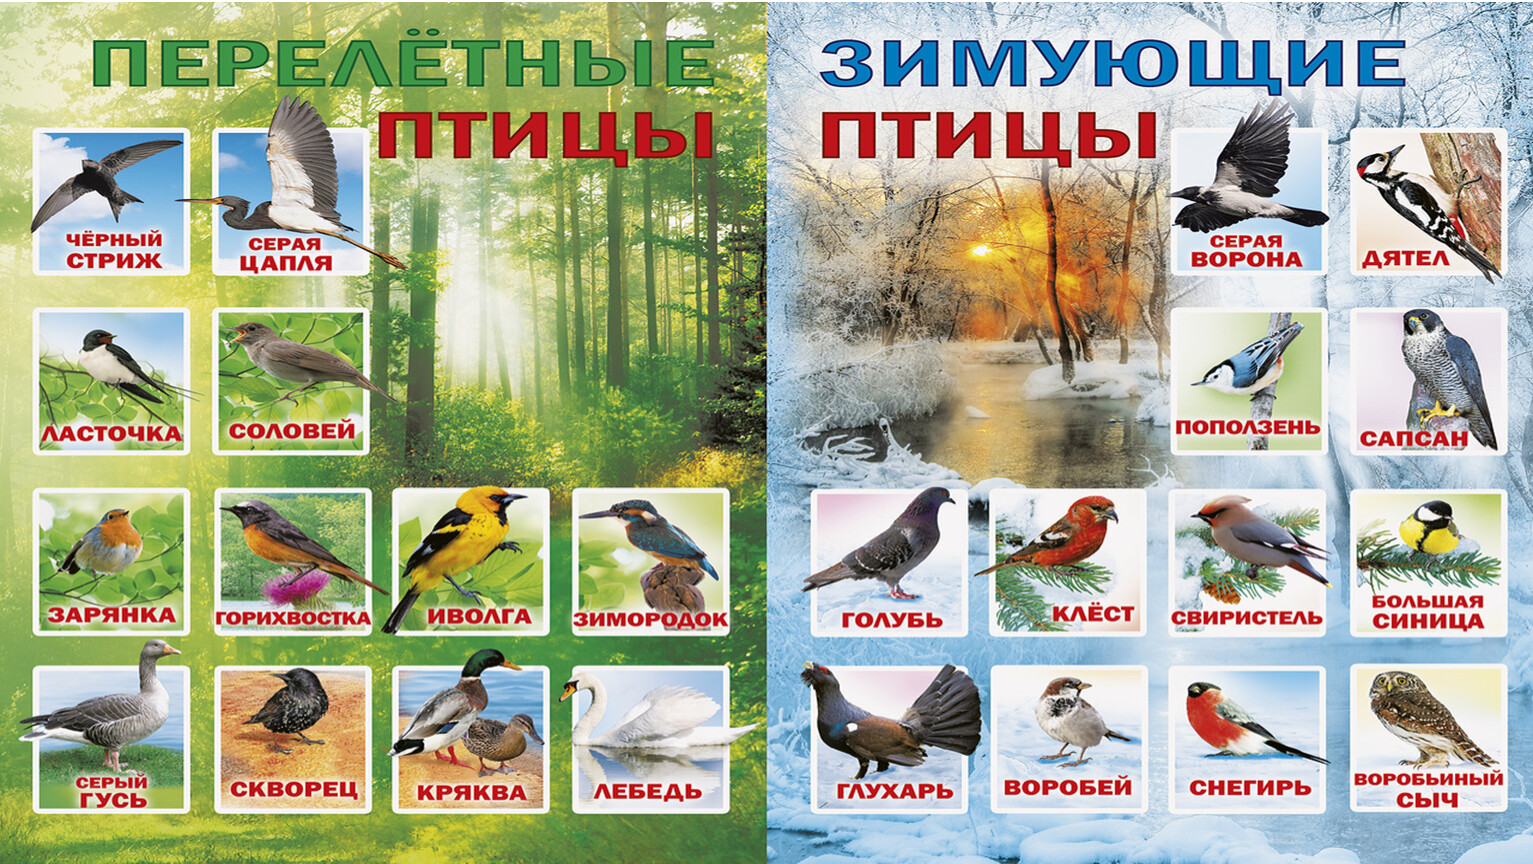 Перелетные птицы пермского края фото с названиями и описанием